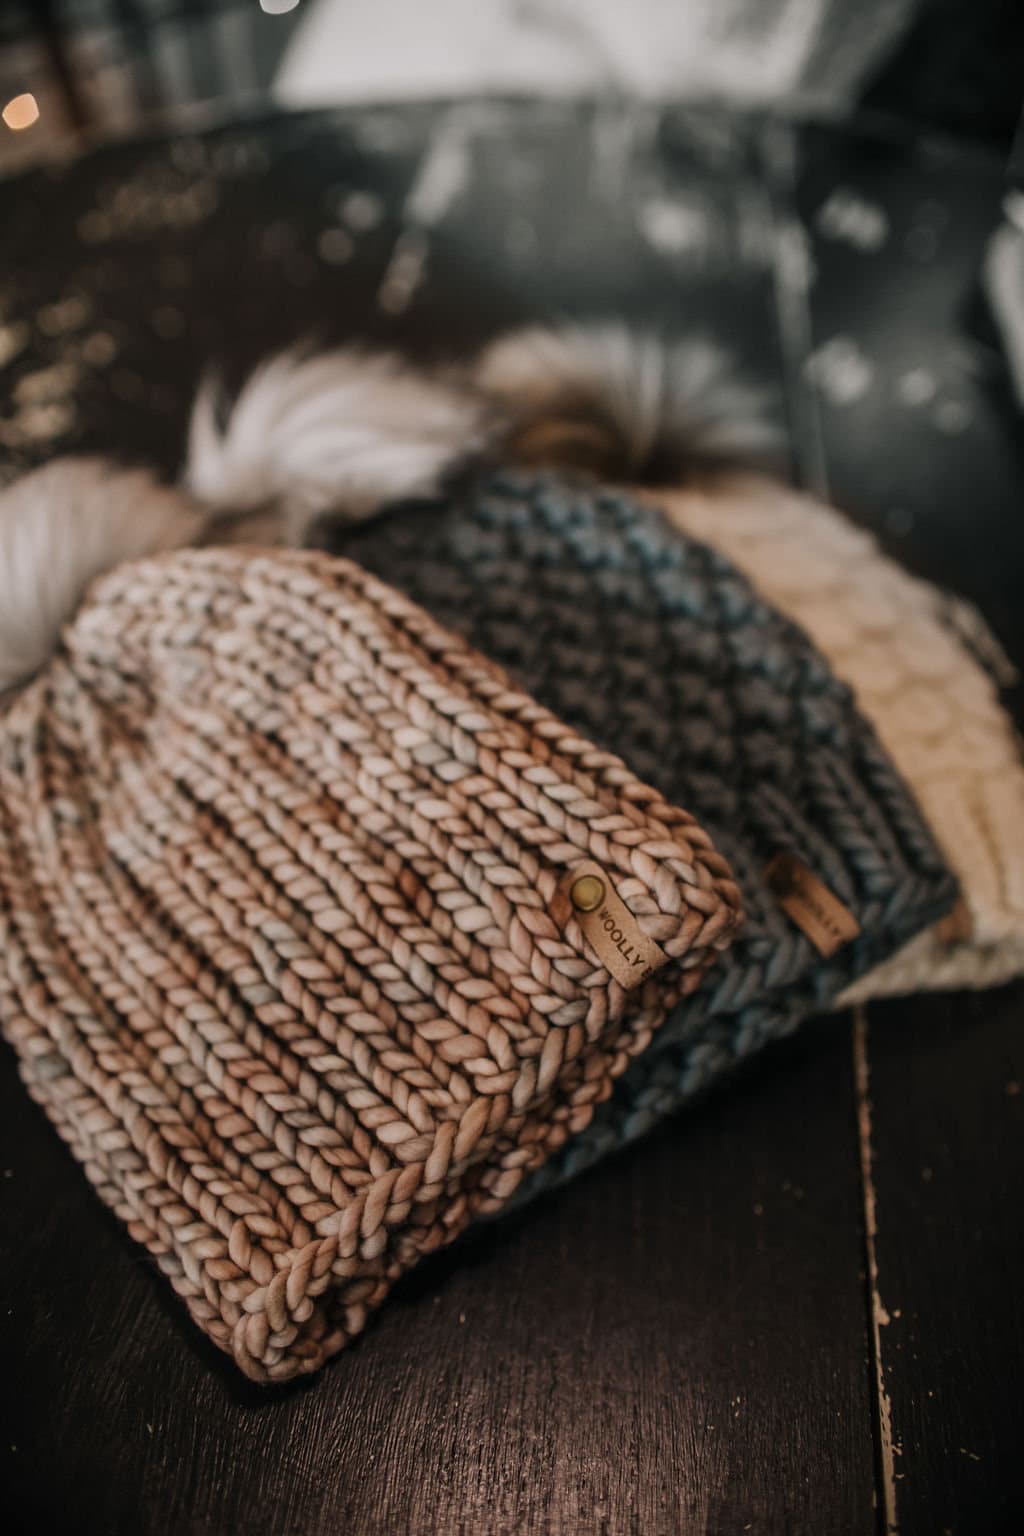 Gray Merino Wool Knit Hat with Faux Fur Pom Pom – Woolly Bear Knits